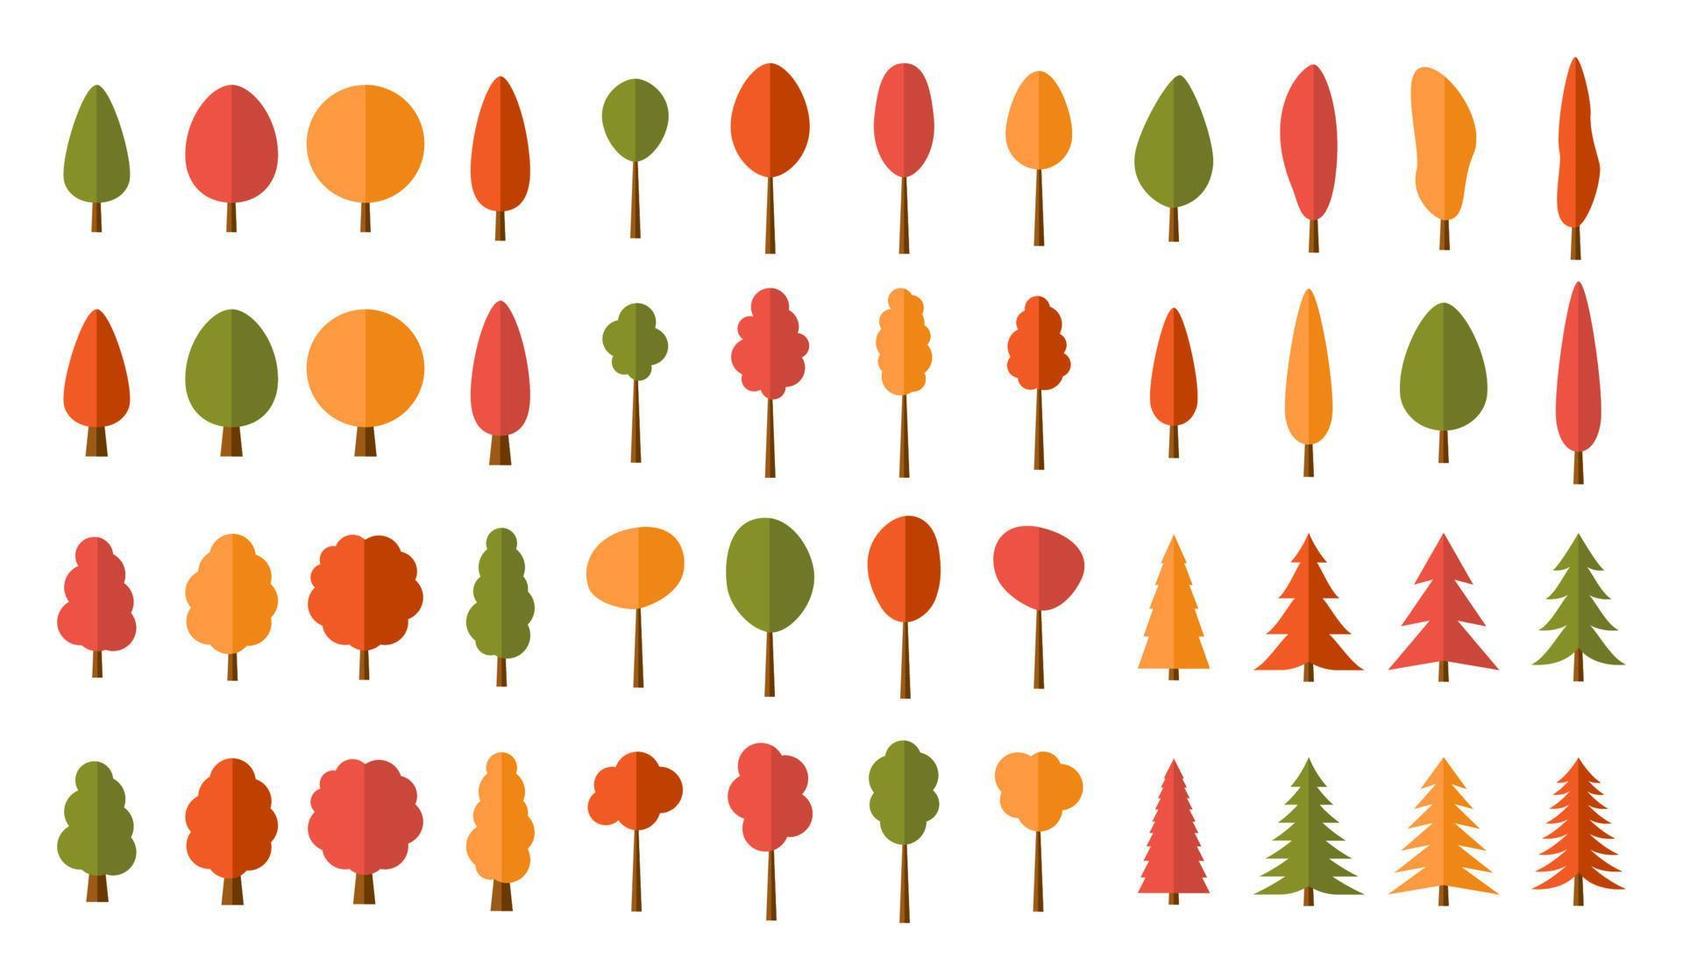 padrão perfeito de árvores coloridas vetor